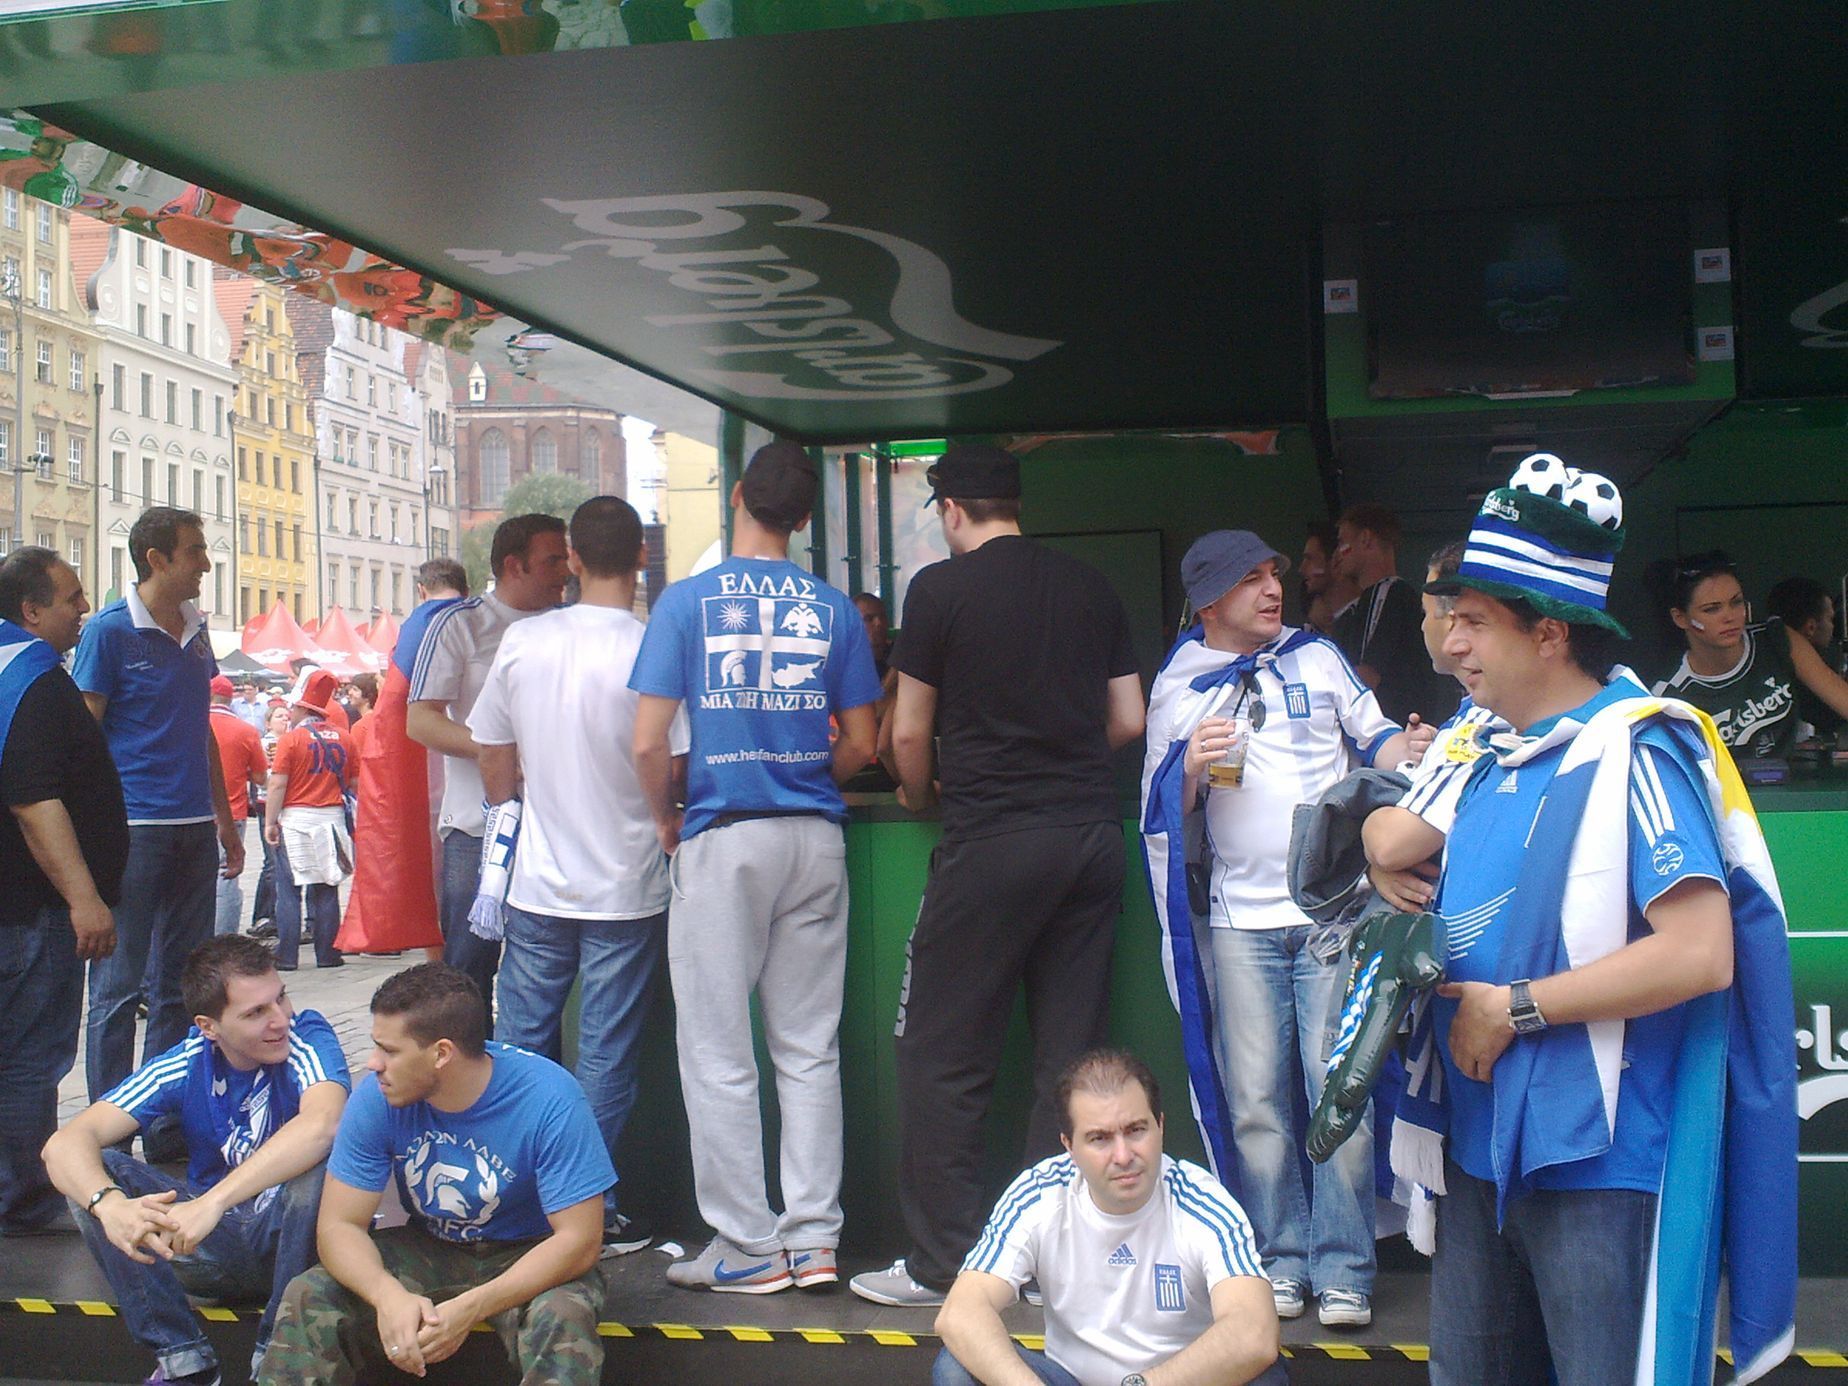 Čeští fanoušci před utkáním s Řeckem